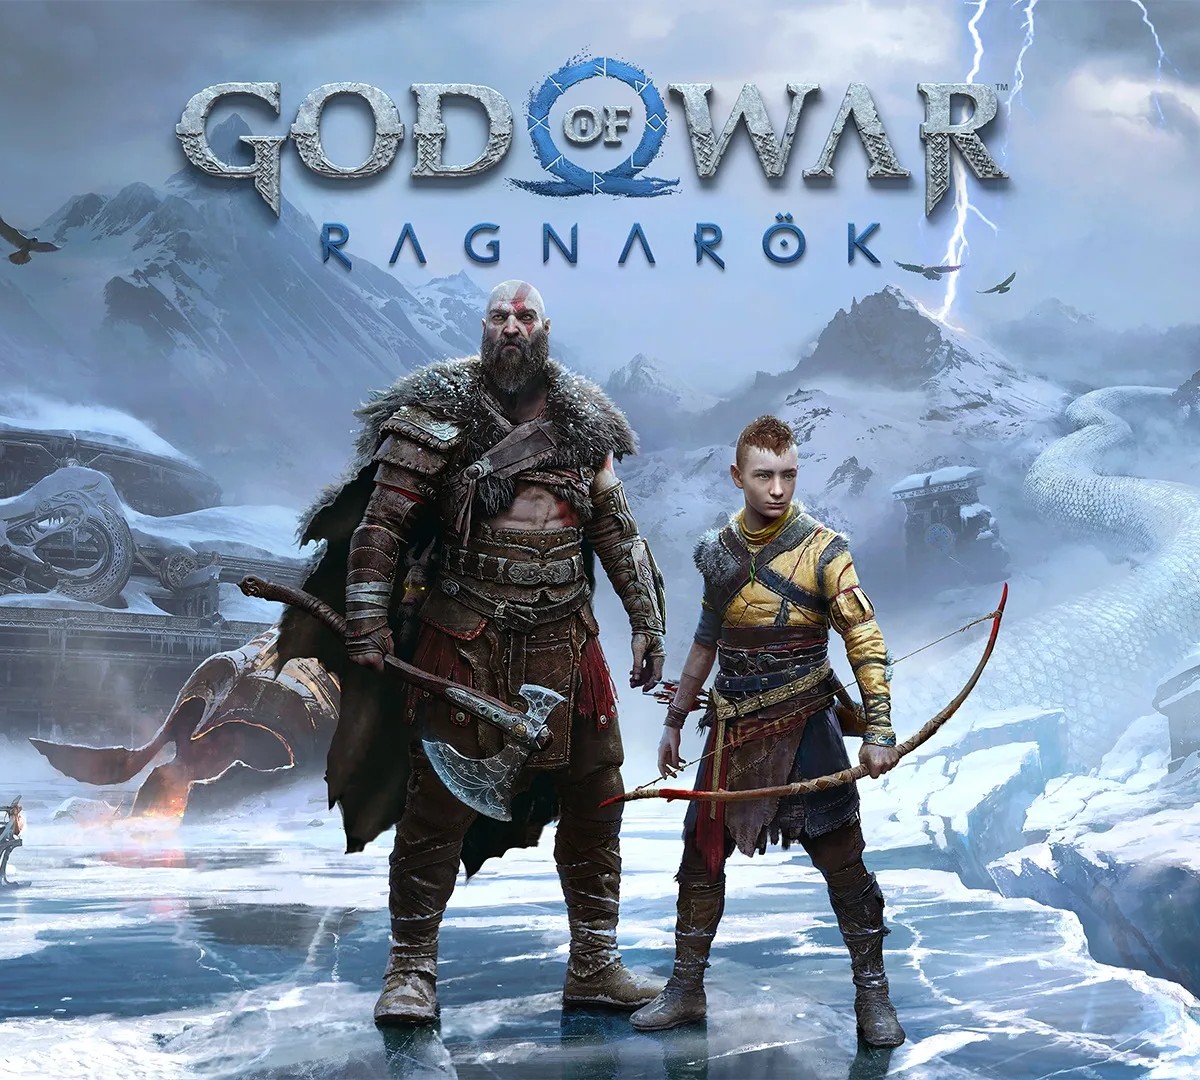 God of War Ragnarök: Valhalla revelado, disponível em 12 de